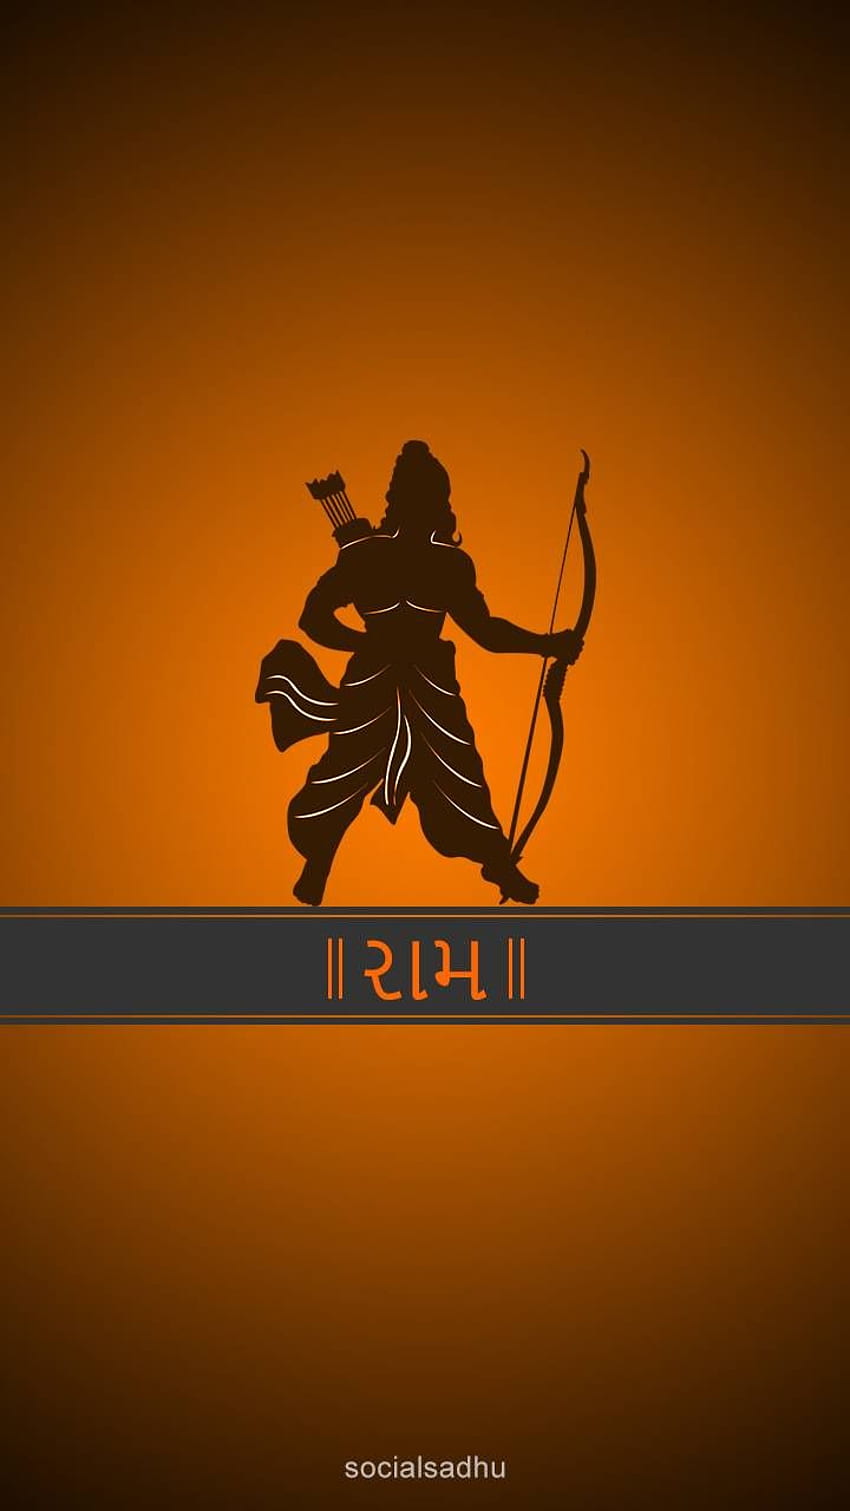 Shri Ram von socialsadhu - jetzt 23. Durchsuchen Sie Millionen von beliebten Lord Ram Wallp. Shri Widder, Shri Widder, Widder, Yoddha: Der Krieger HD-Handy-Hintergrundbild